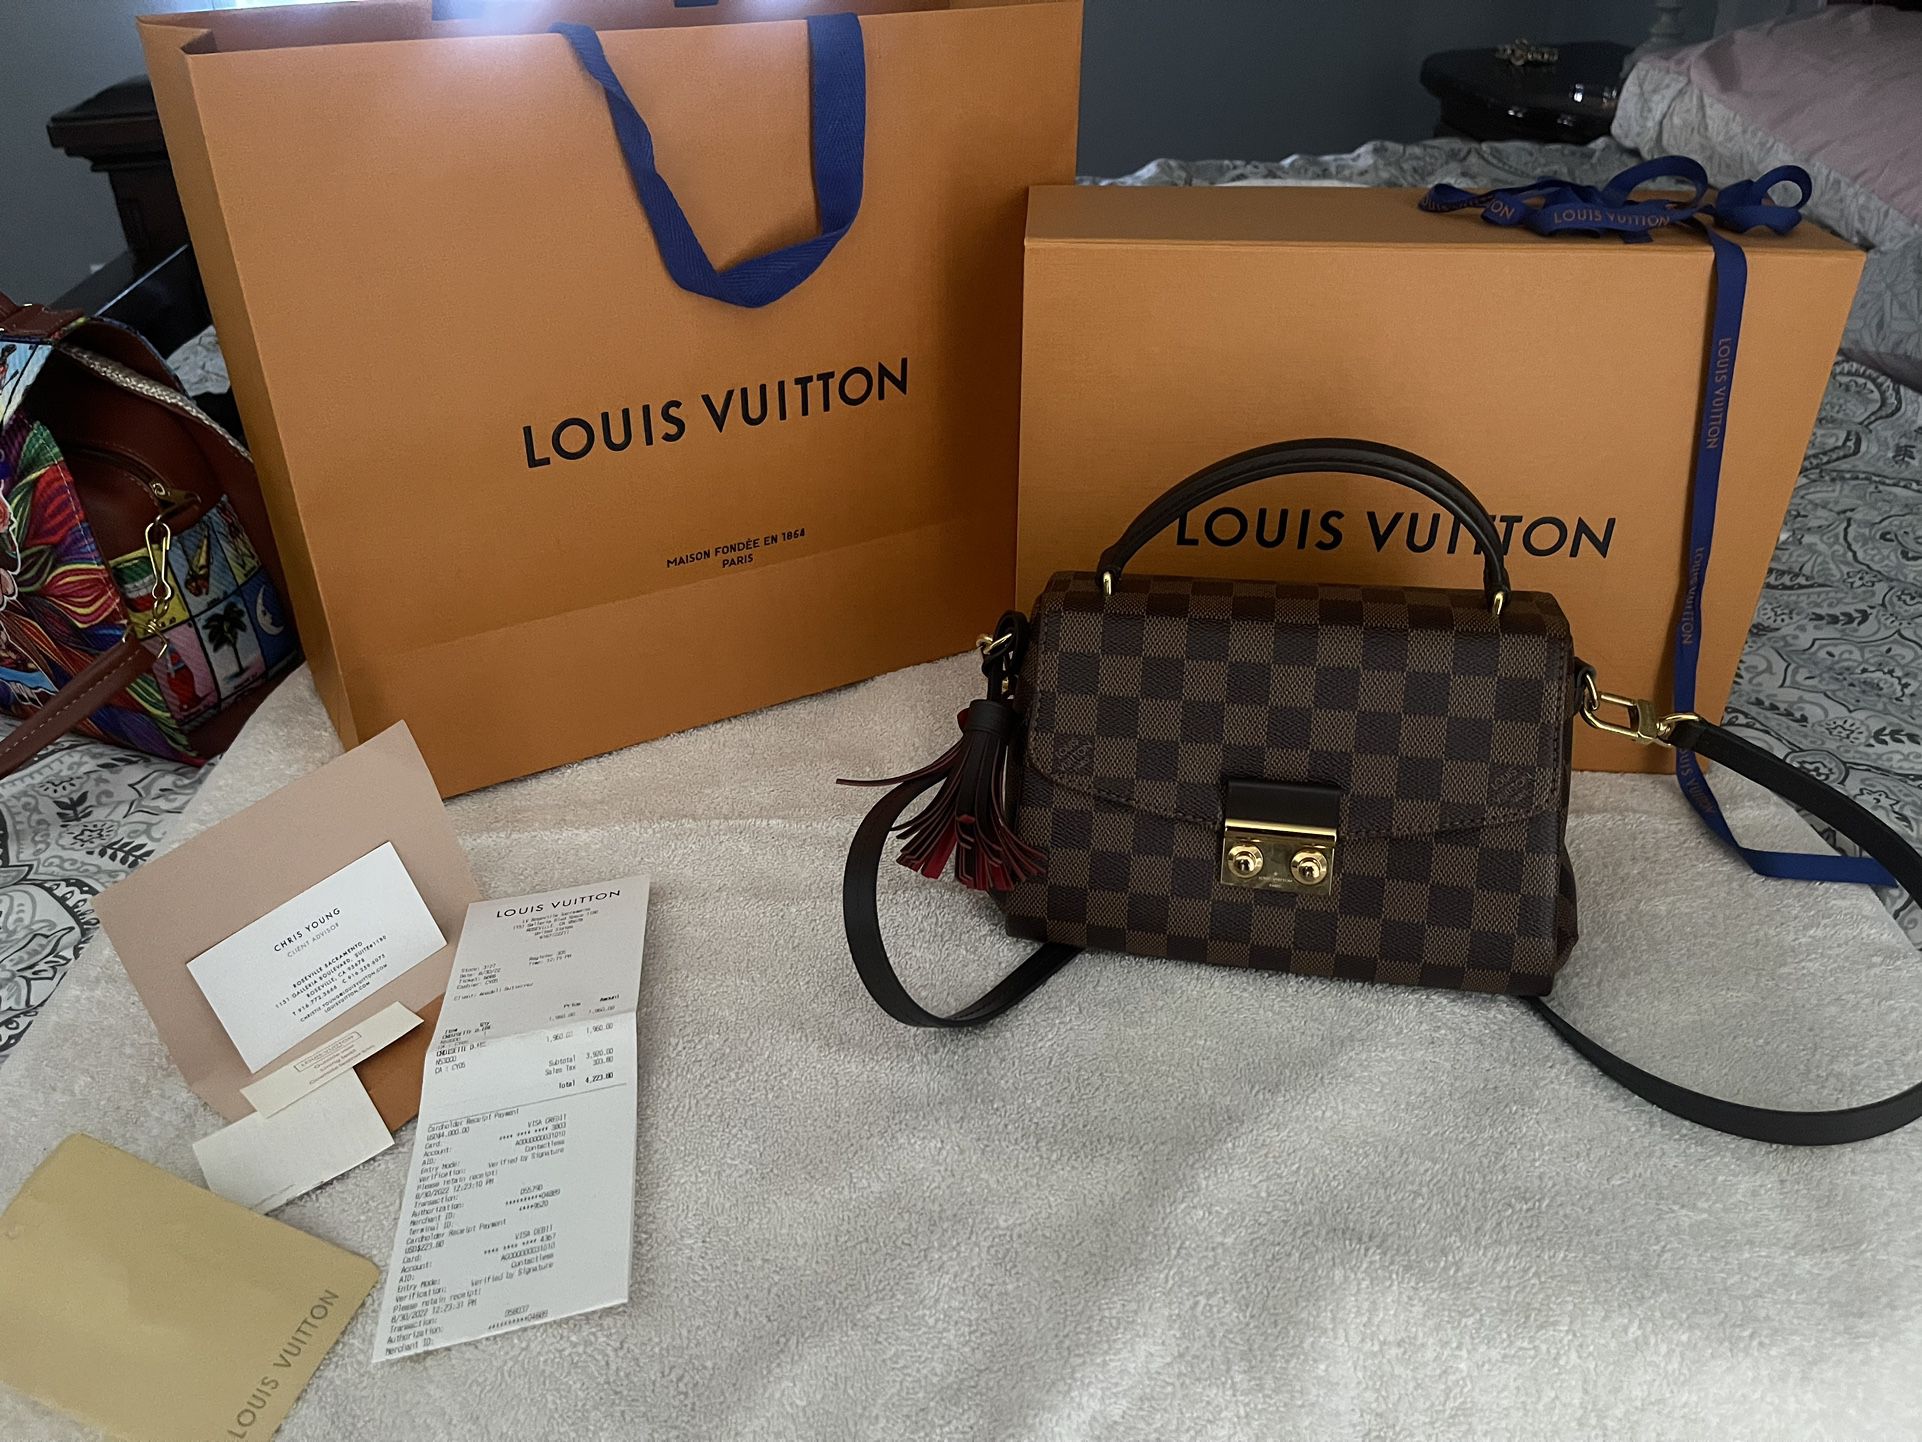 Authentic Louis Vuitton Purse - $1,750 